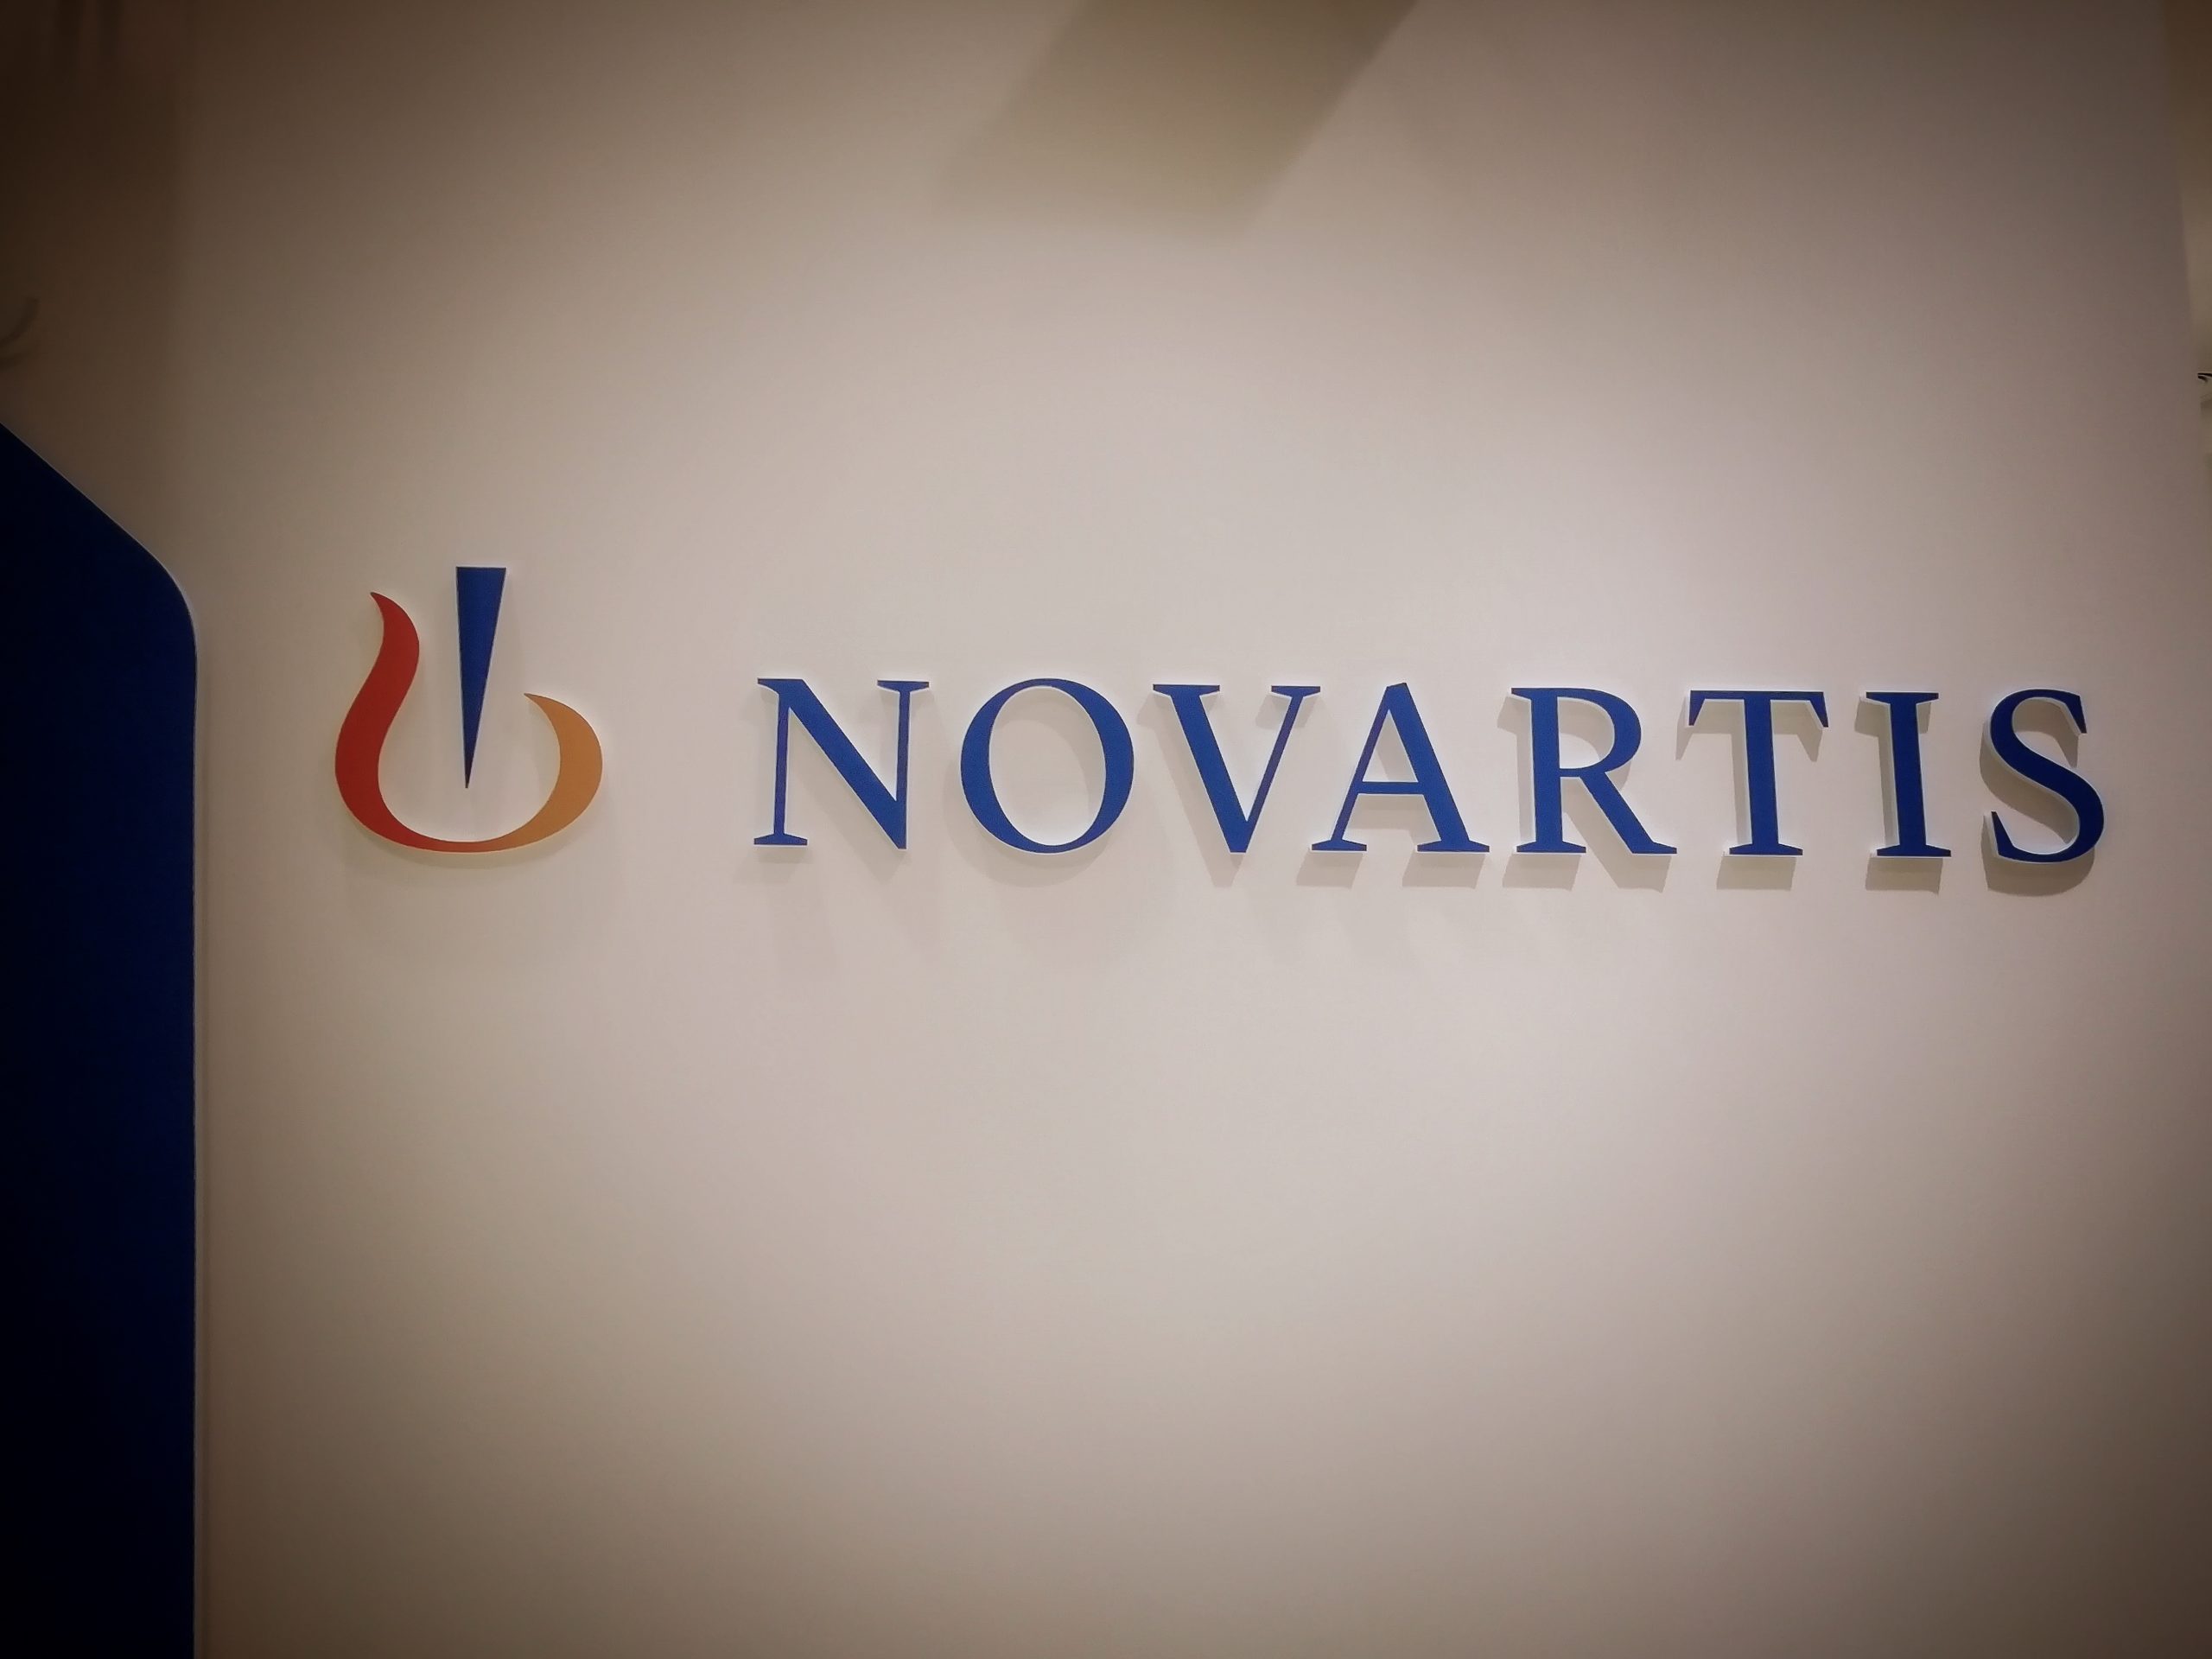 Απολογούνται Κώστας Βαξεβάνης και Γιάννης Φιλιππάκης για την υπόθεση Novartis